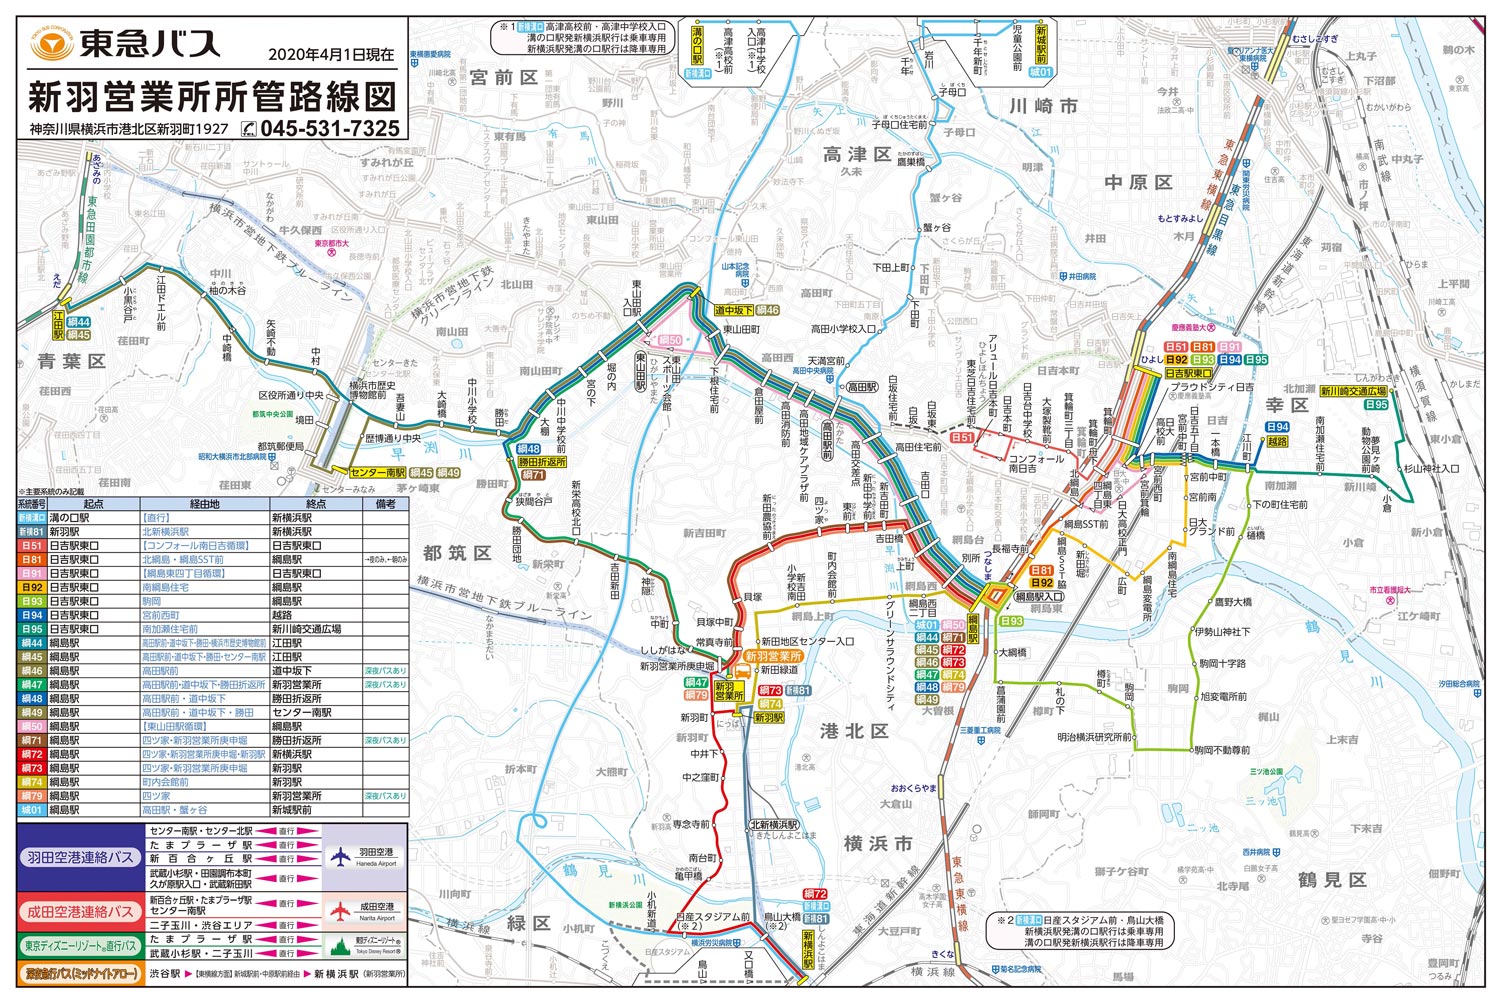 東急バス 日吉 綱島発着の16系統で 暫定ダイヤ改正 コロナ影響を反映 横浜日吉新聞